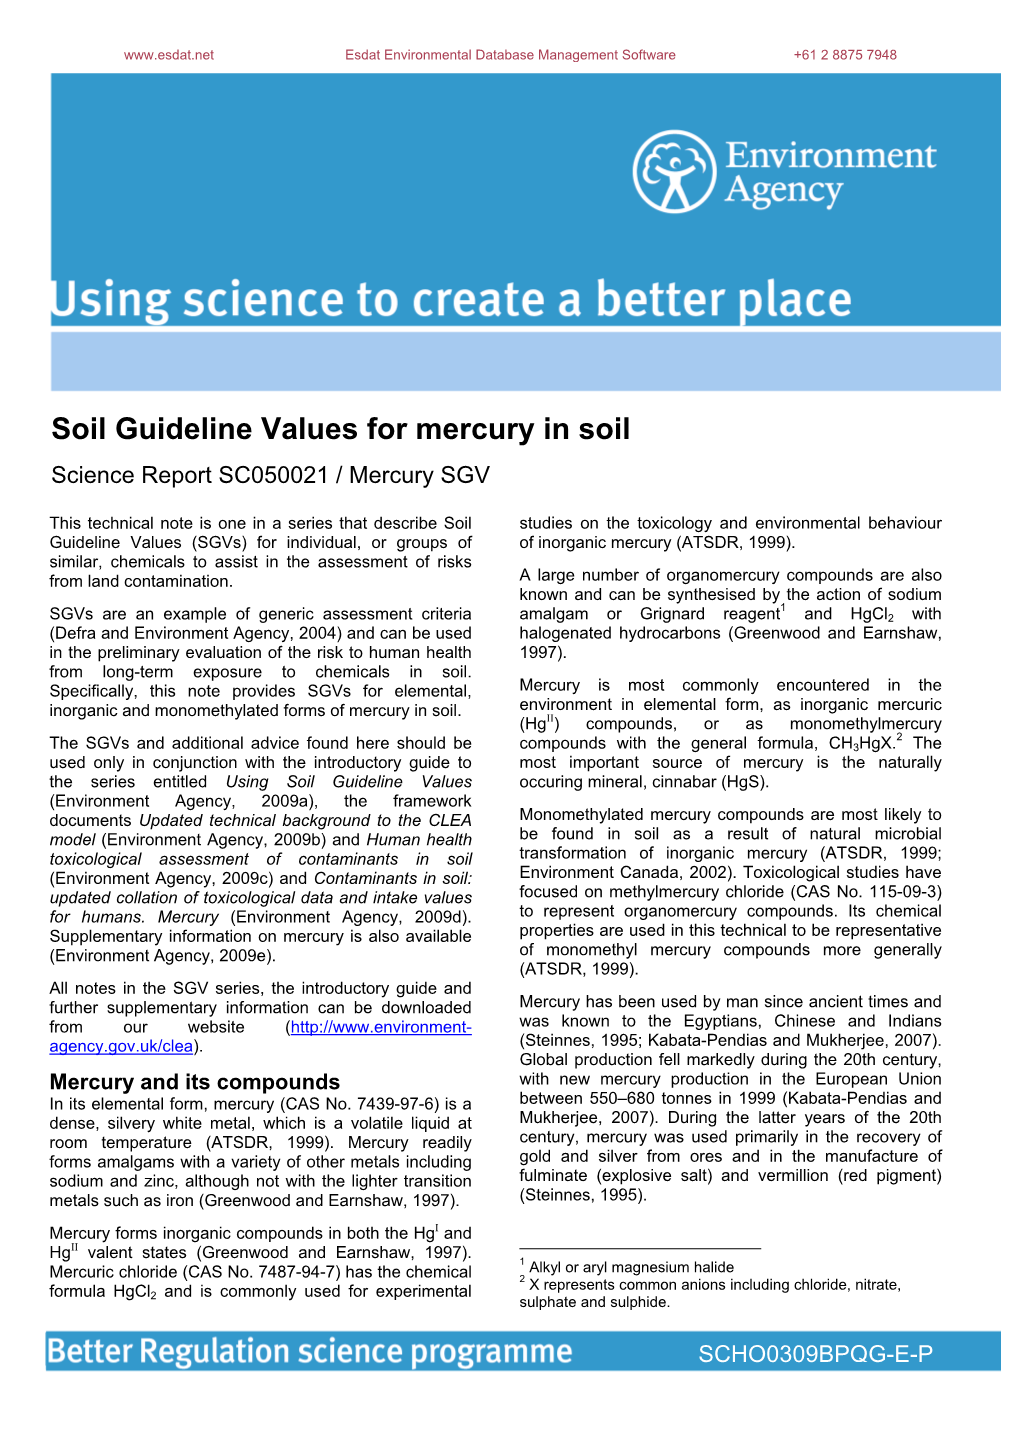 Soil Guideline Values for Mercury in Soil